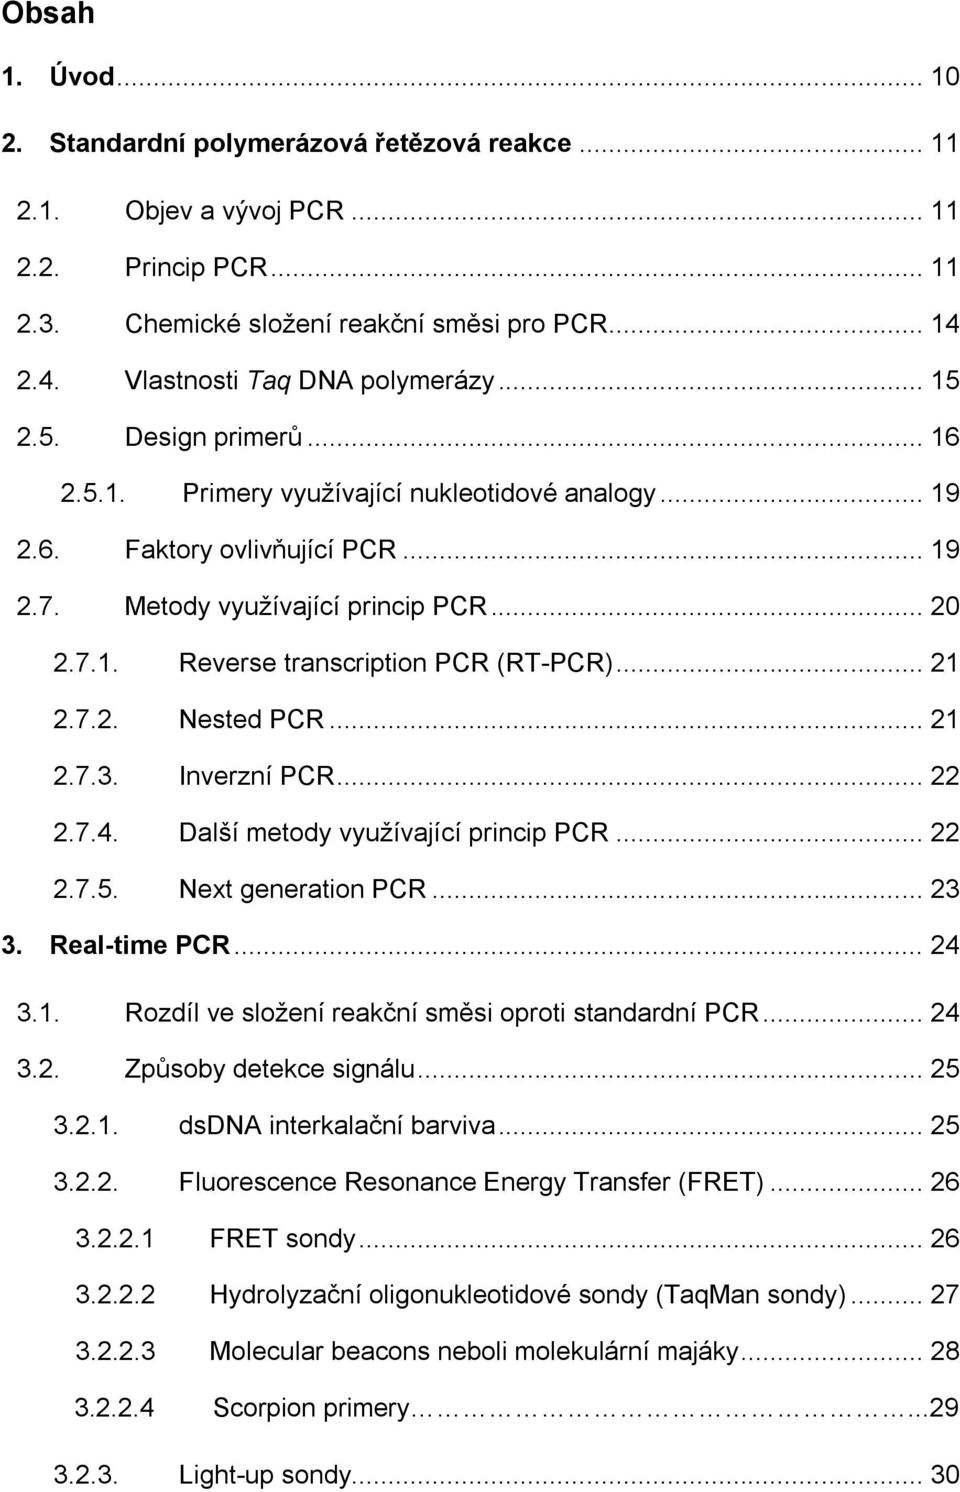 7.1. Reverse transcription PCR (RT-PCR)... 21 2.7.2. Nested PCR... 21 2.7.3. Inverzní PCR... 22 2.7.4. Další metody využívající princip PCR... 22 2.7.5. Next generation PCR... 23 3. Real-time PCR.